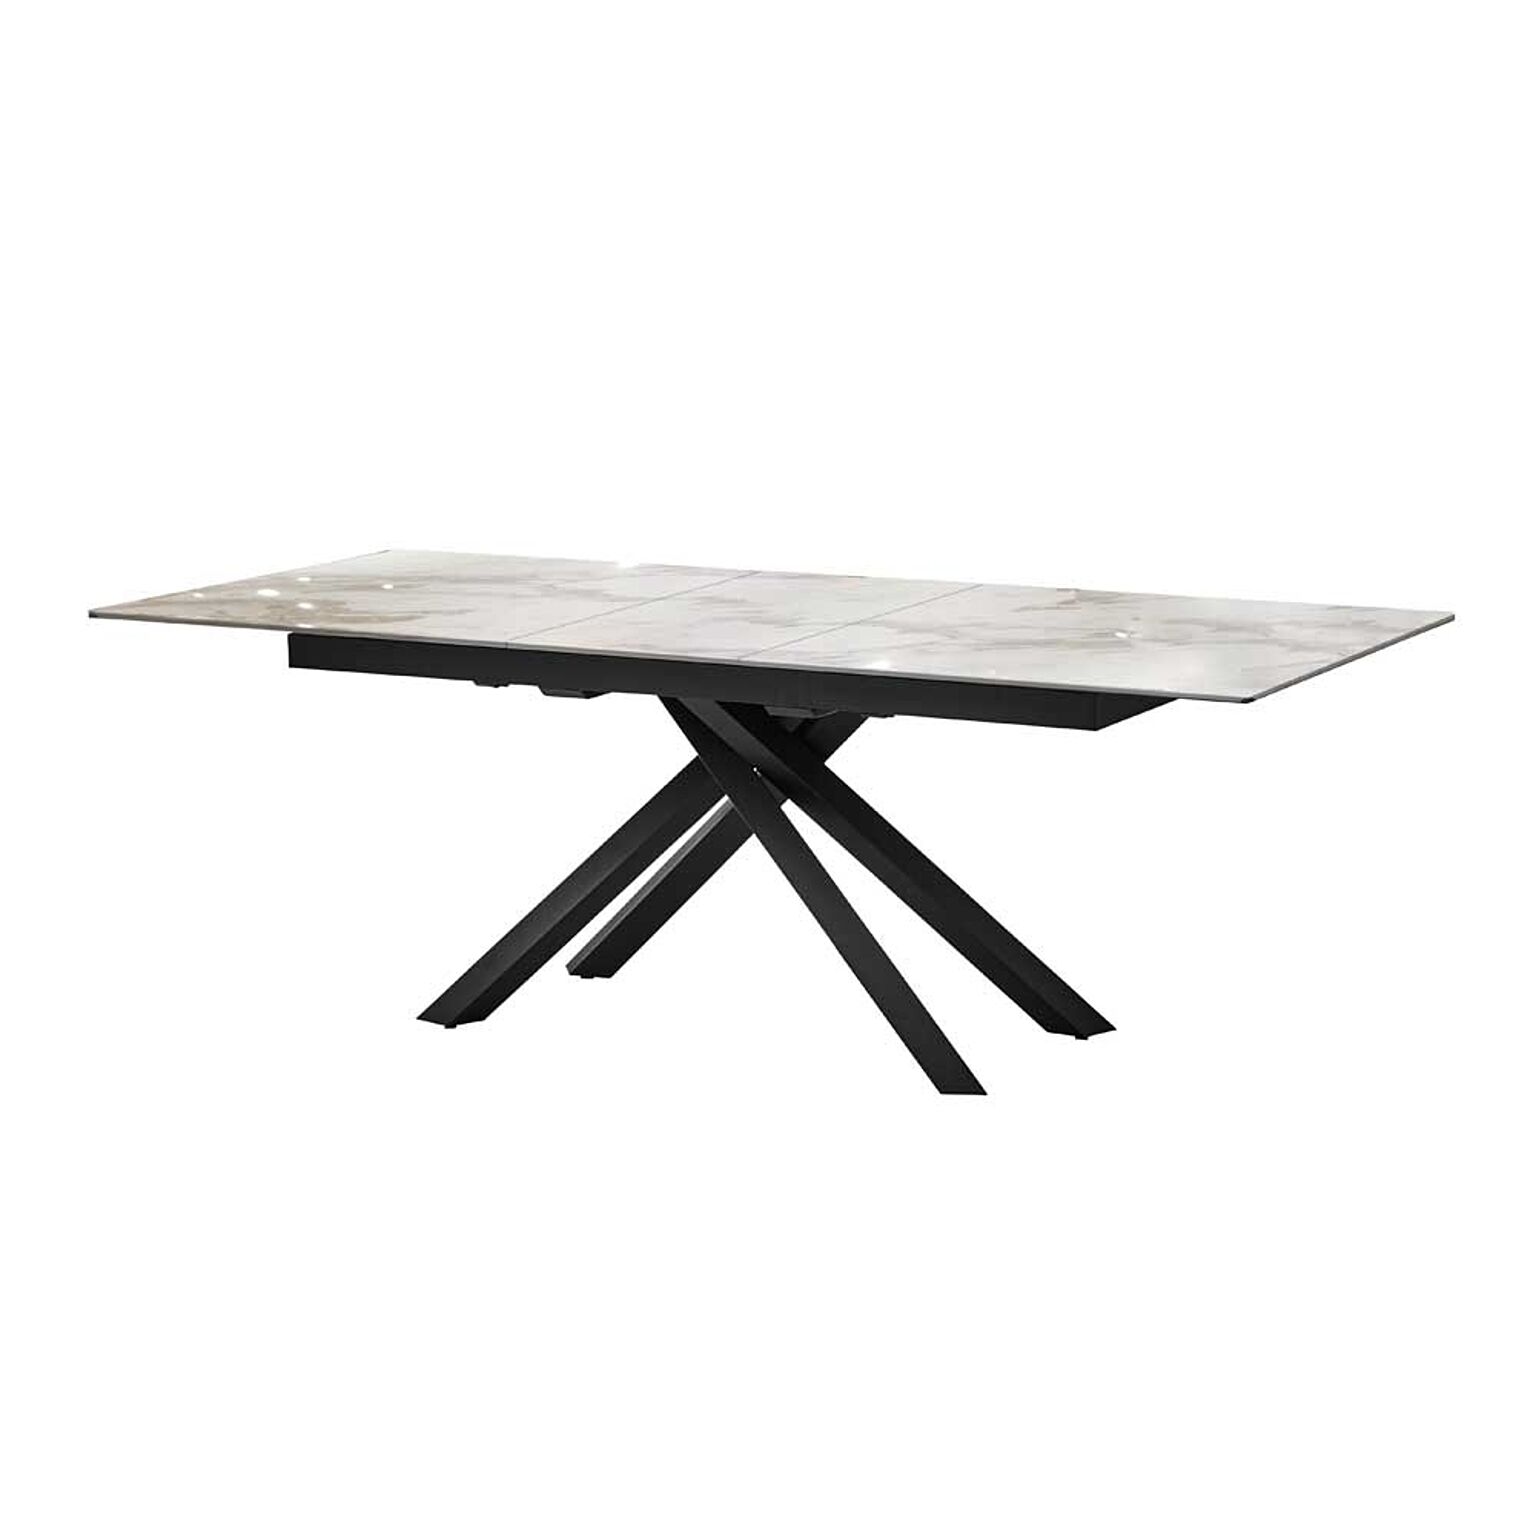 セラミック製 160-200伸長式テーブル